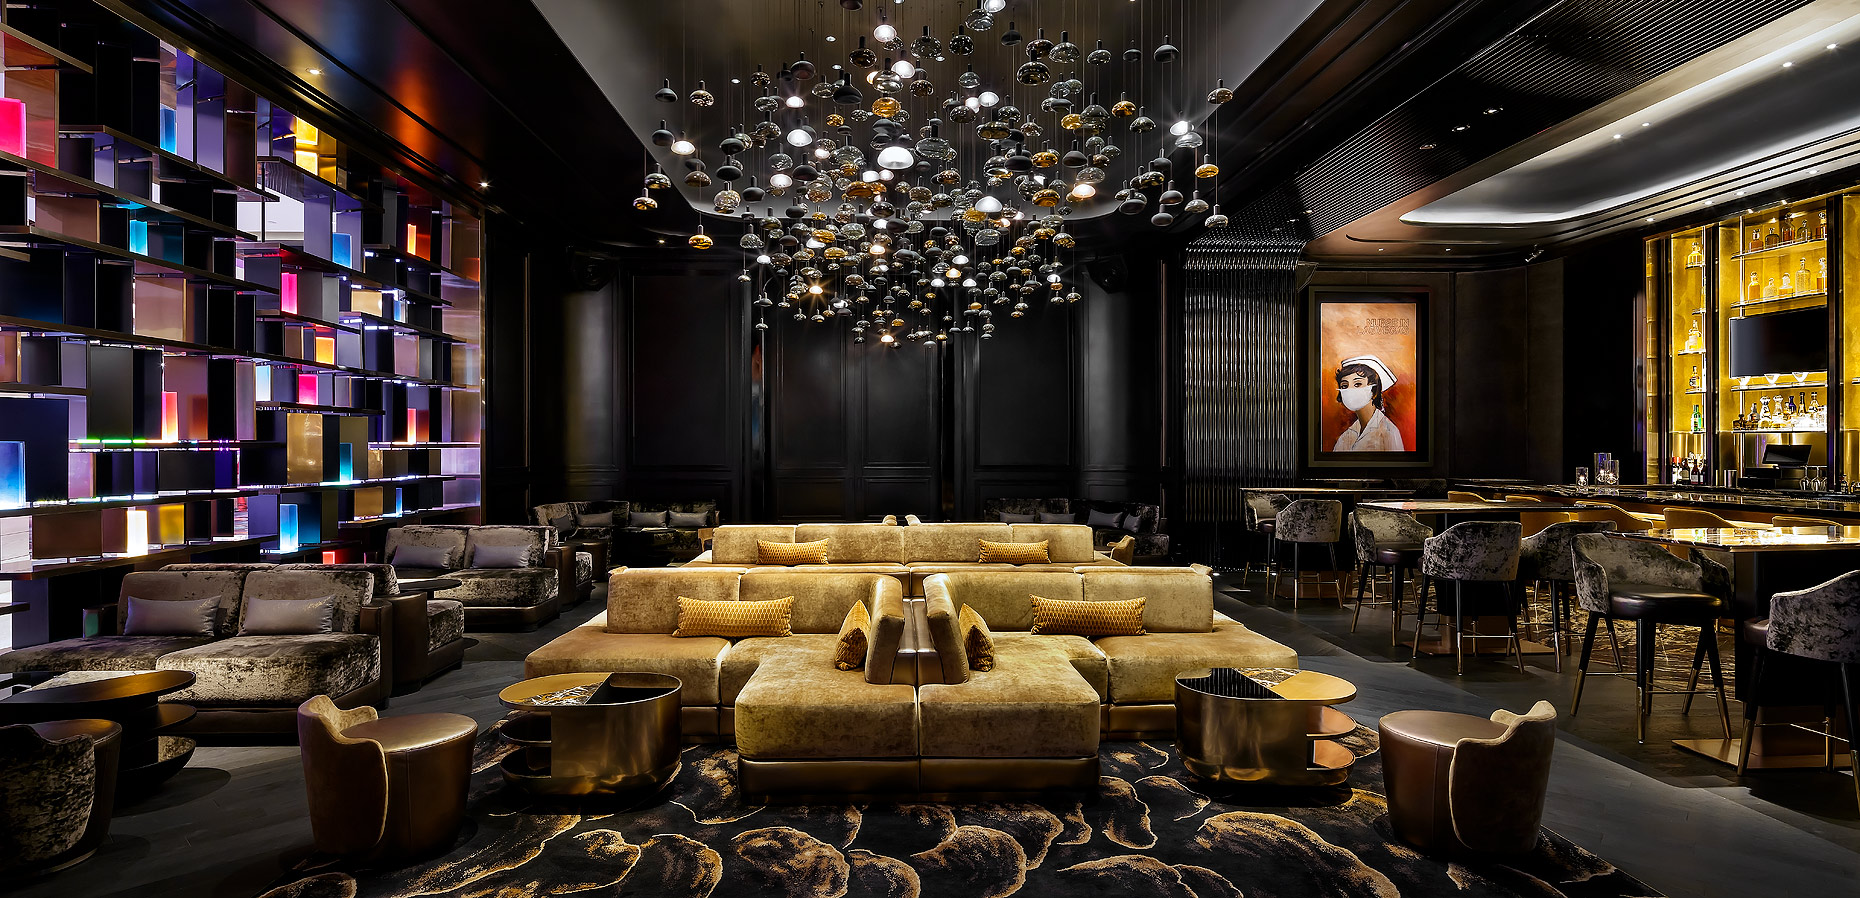 Camden Lounge Las Vegas - Studio Munge Design